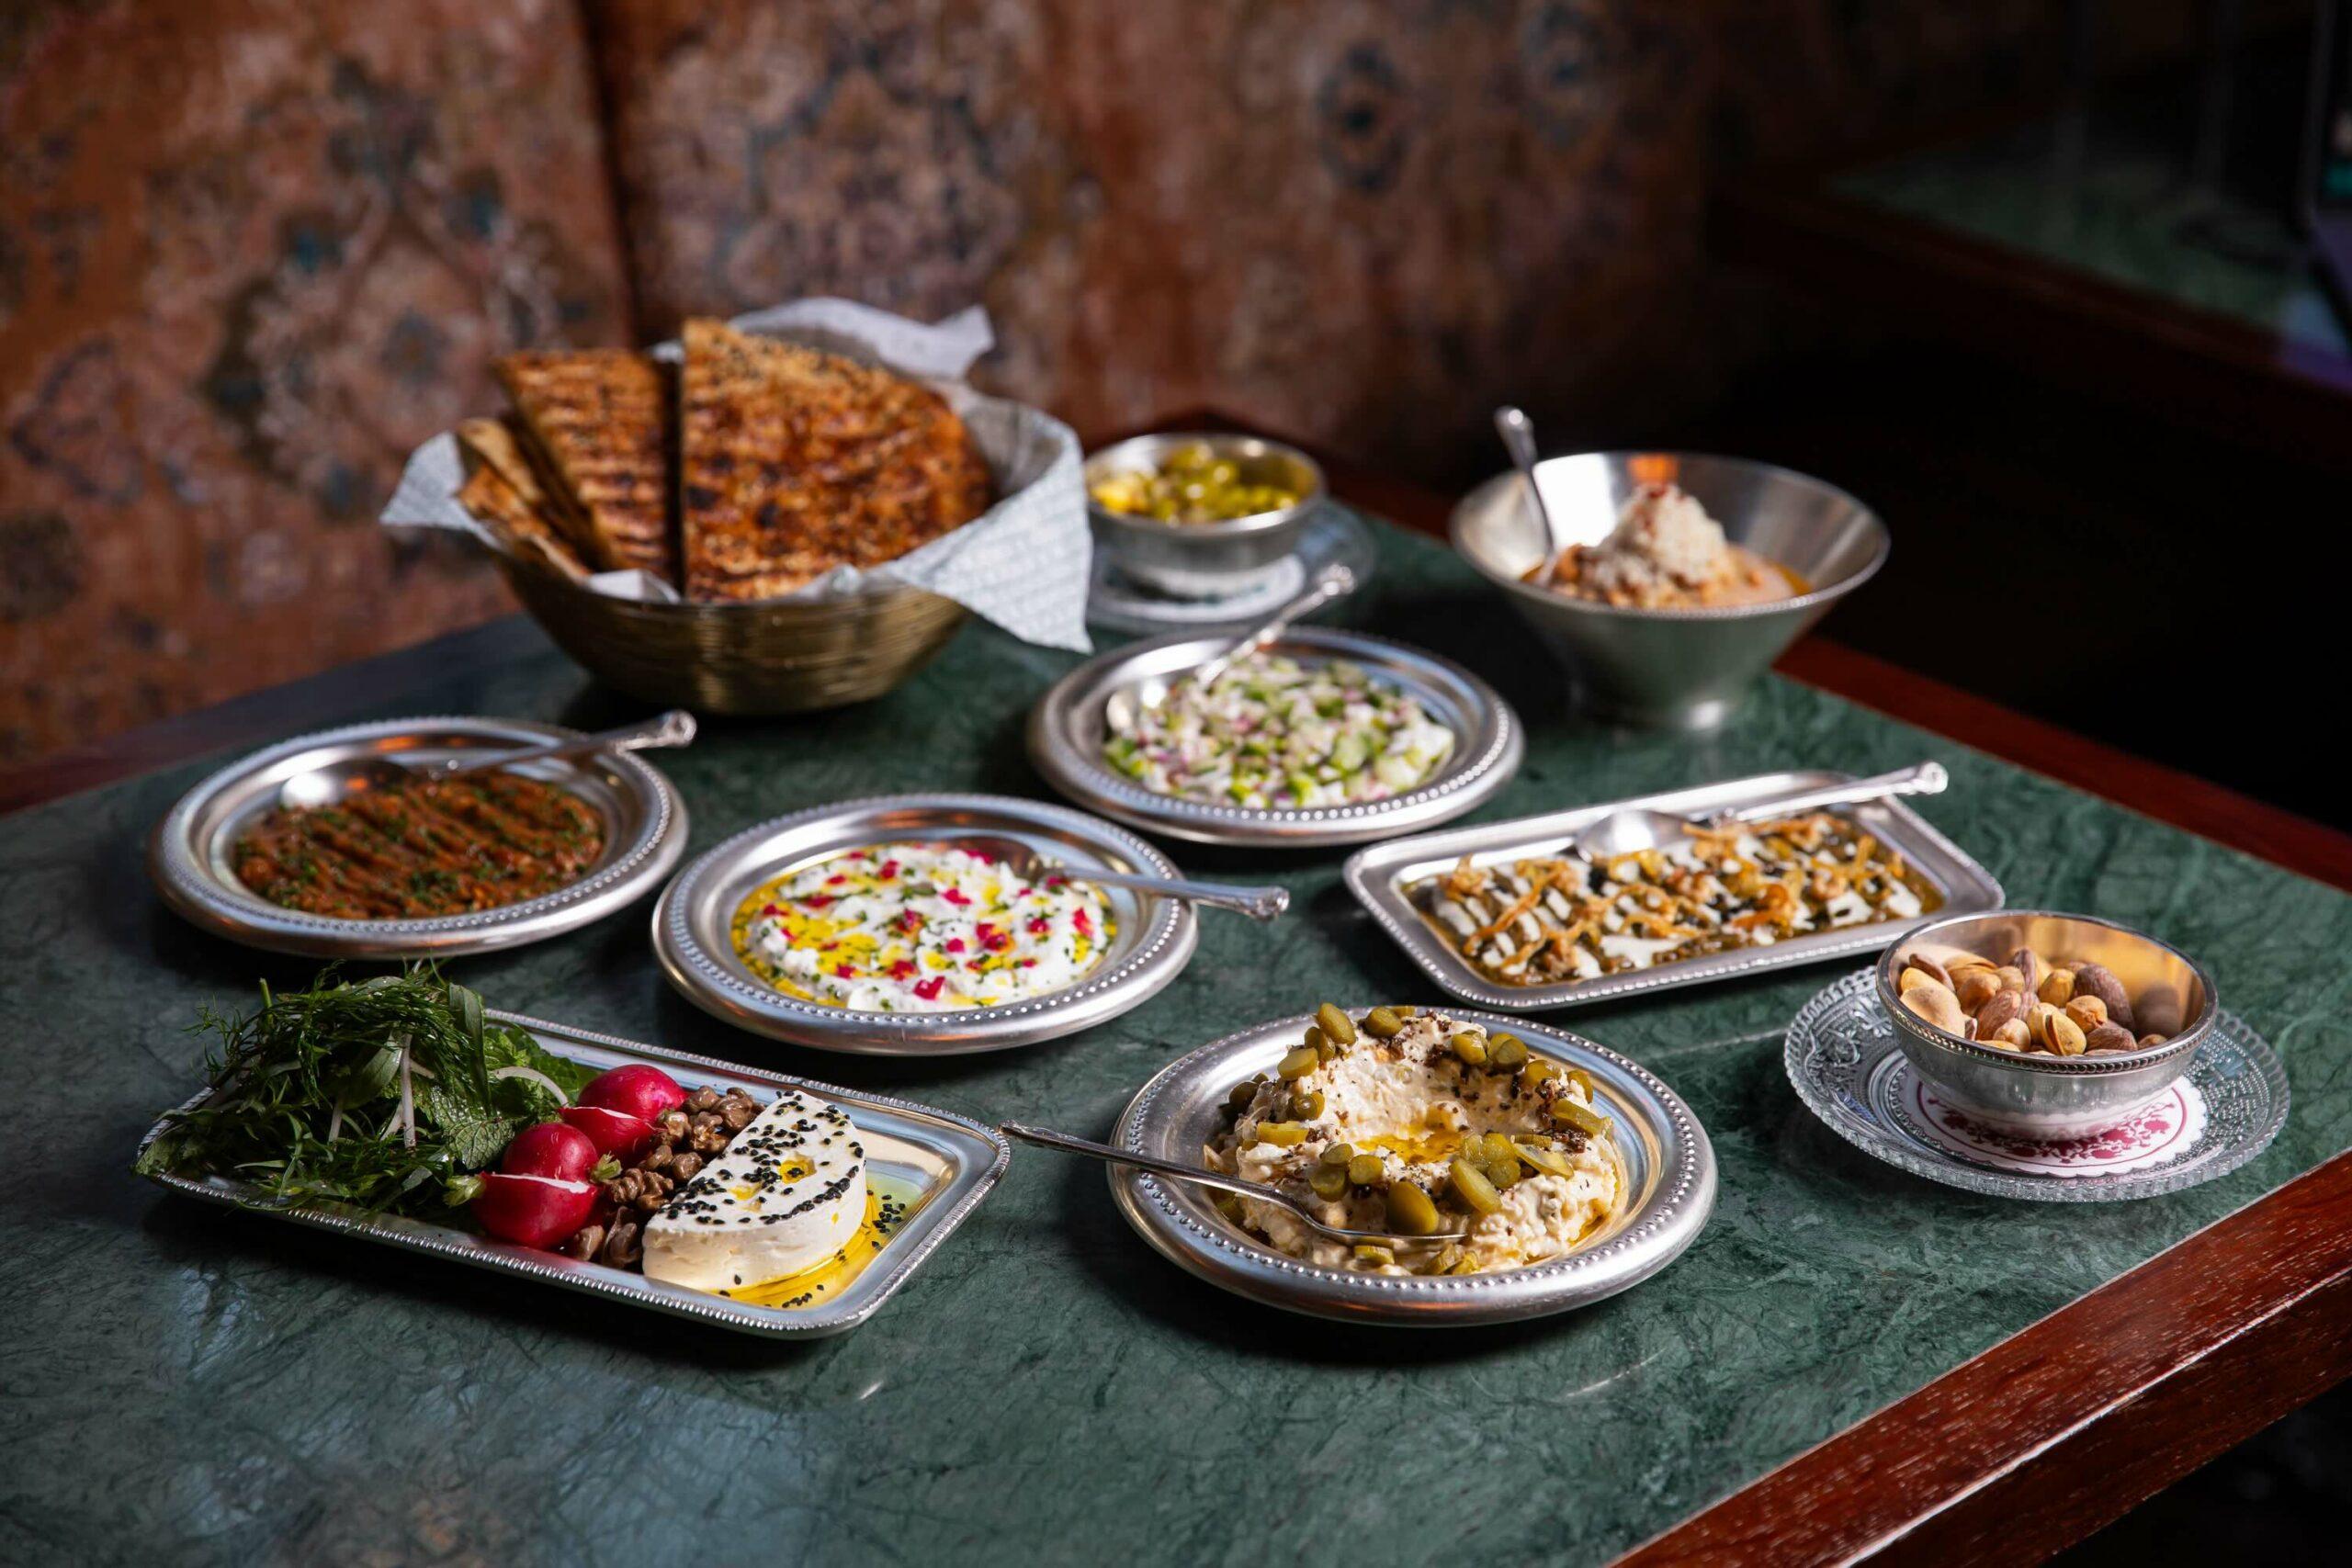 London restaurant Berenjak is now open in Sharjah